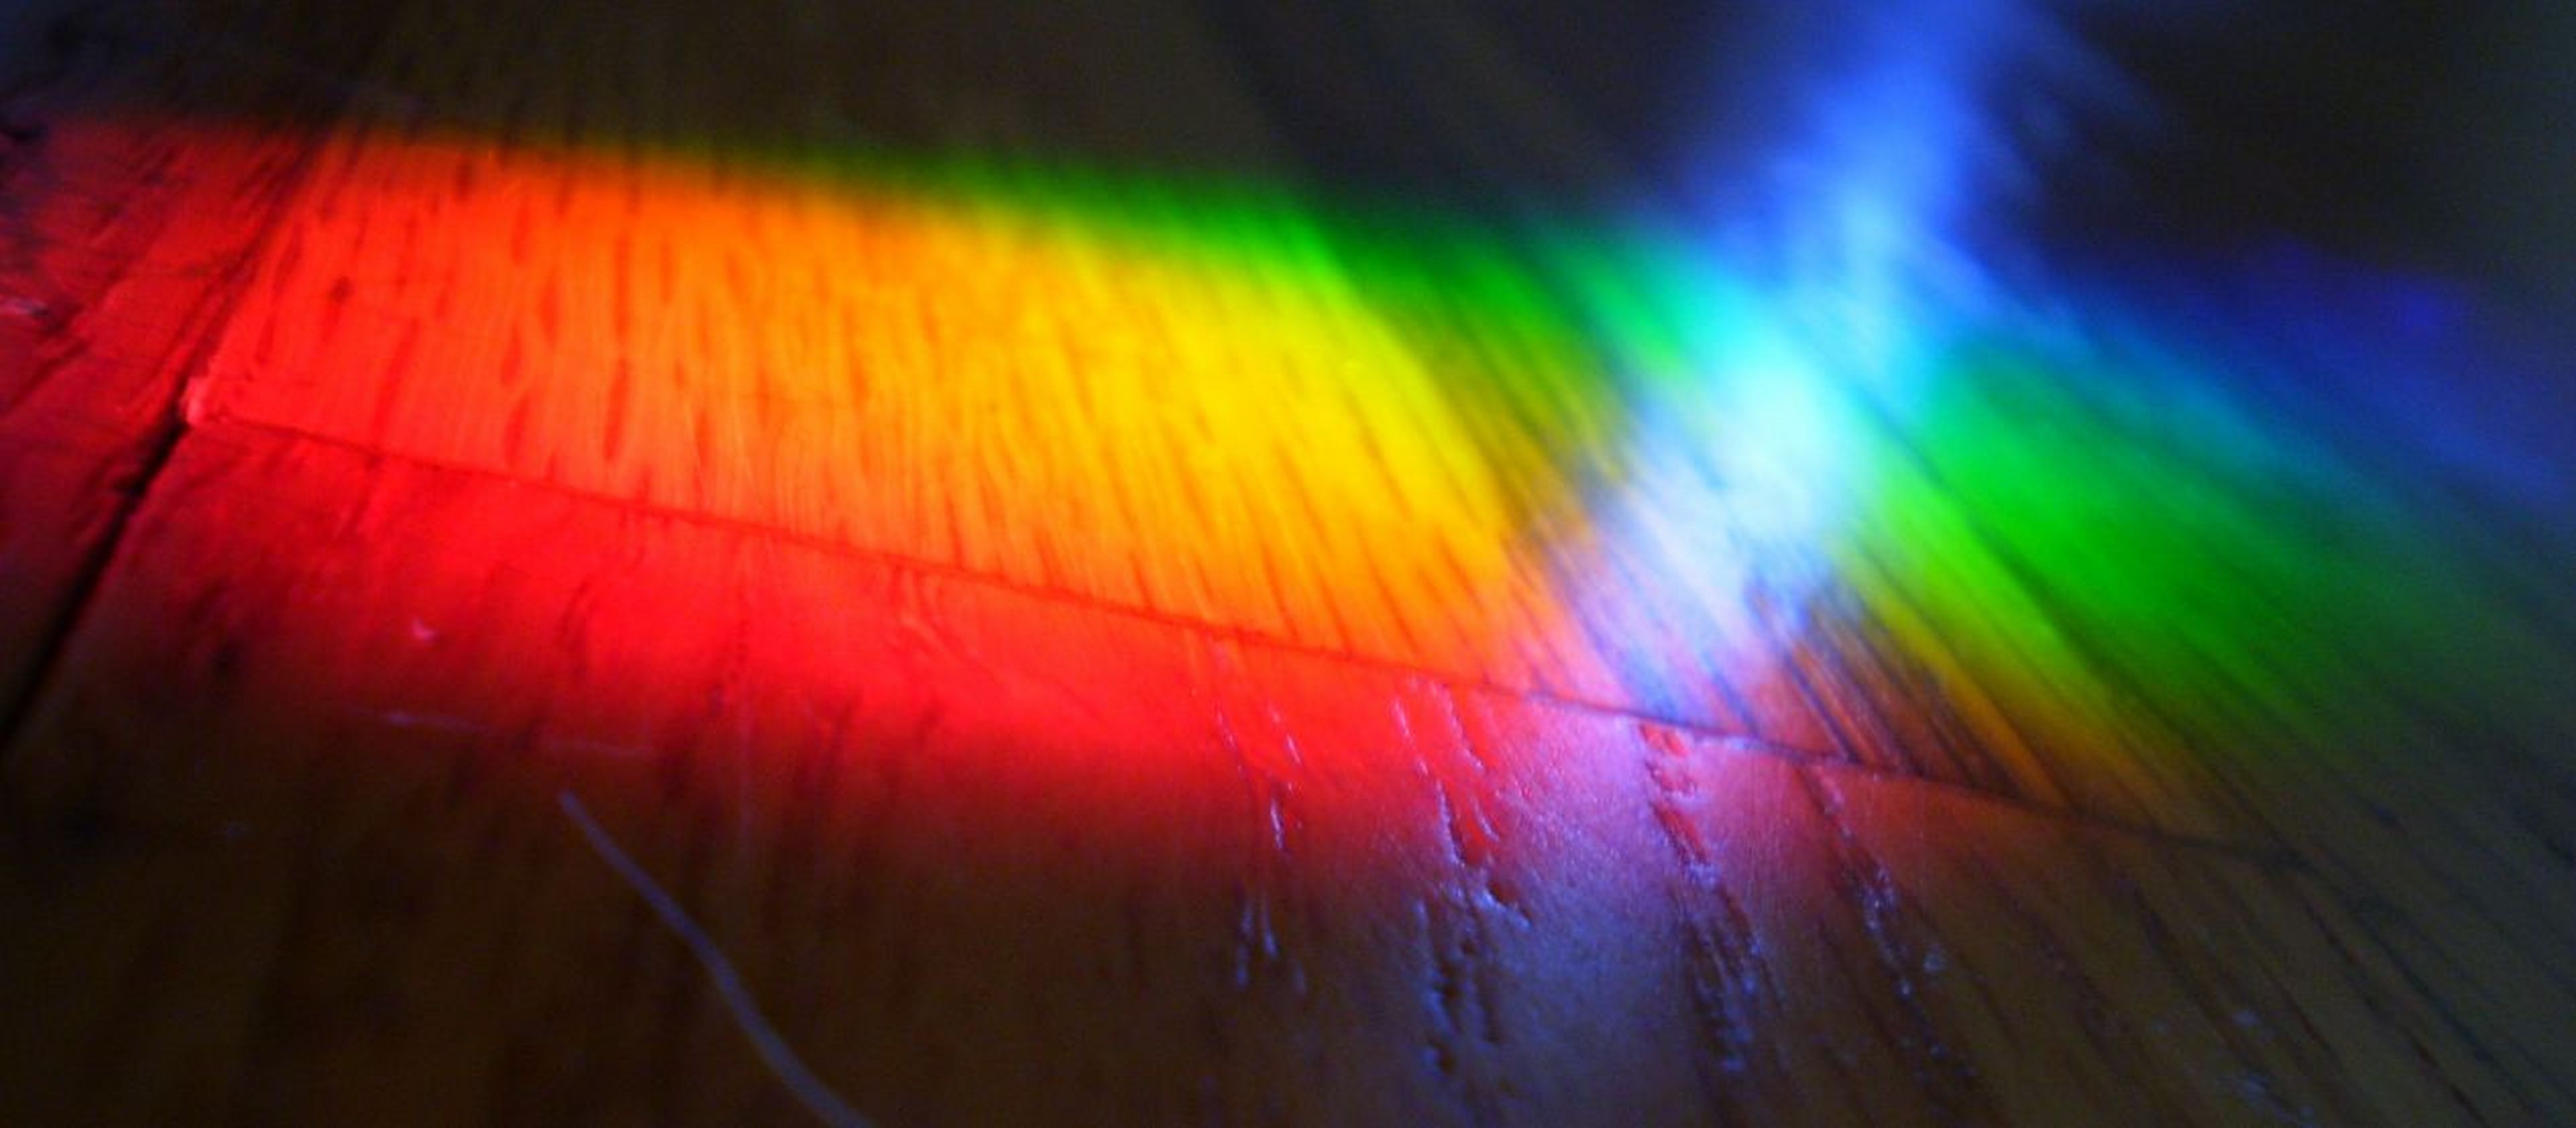 Are Full Spectrum Light Bulbs Effective?